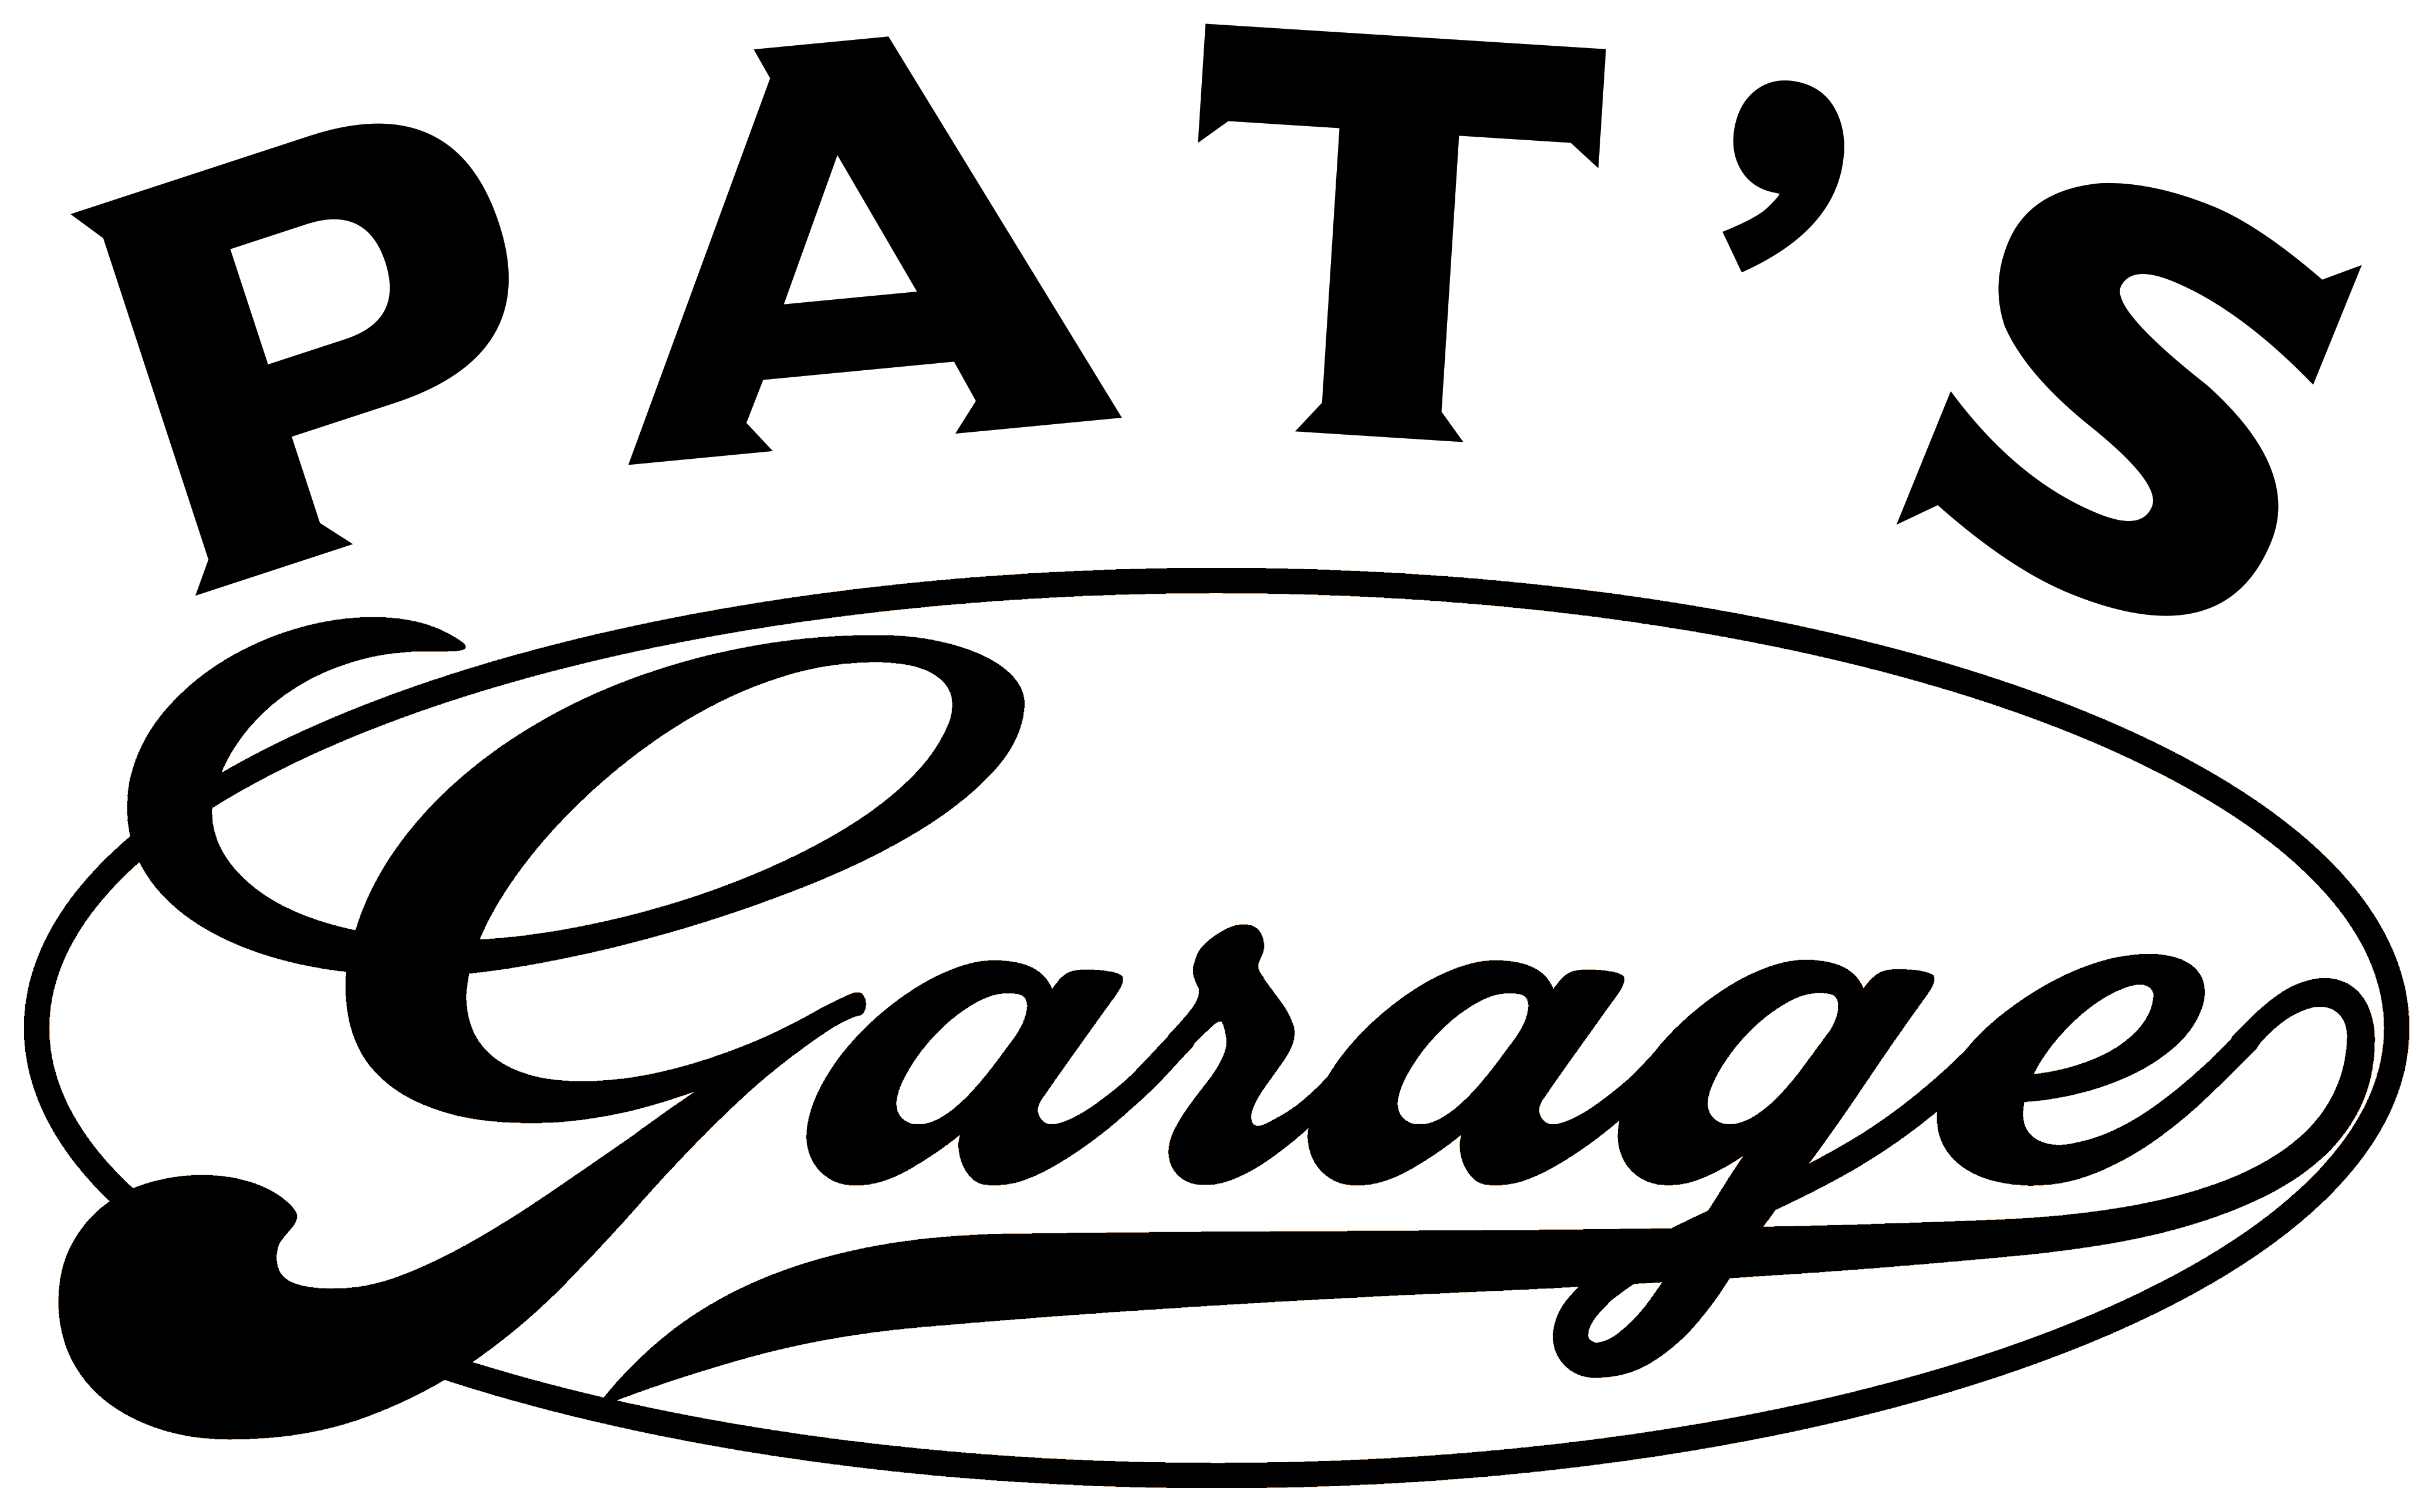 Pat’s Garage, LLC